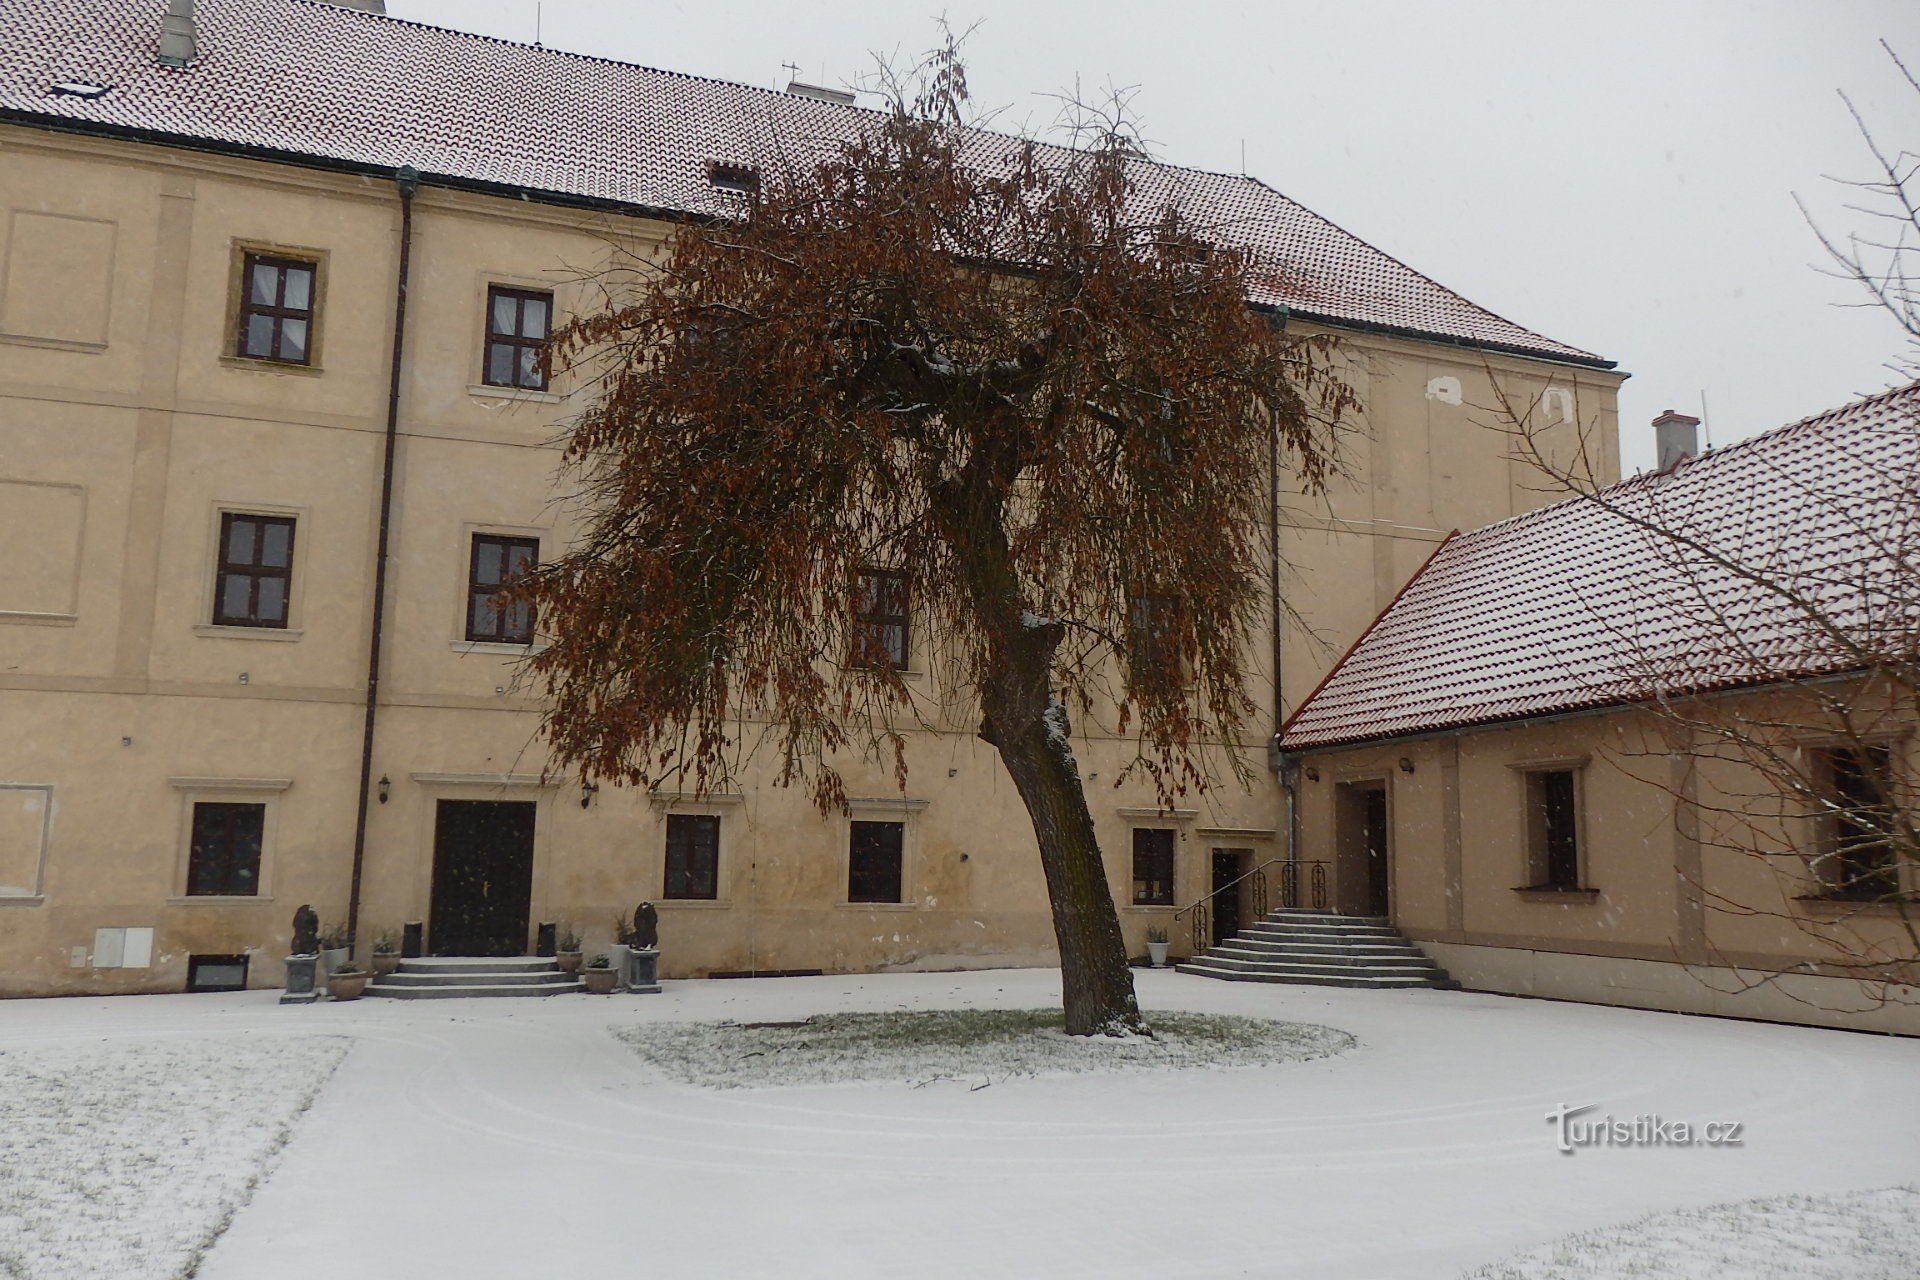 Castello di Vinařice